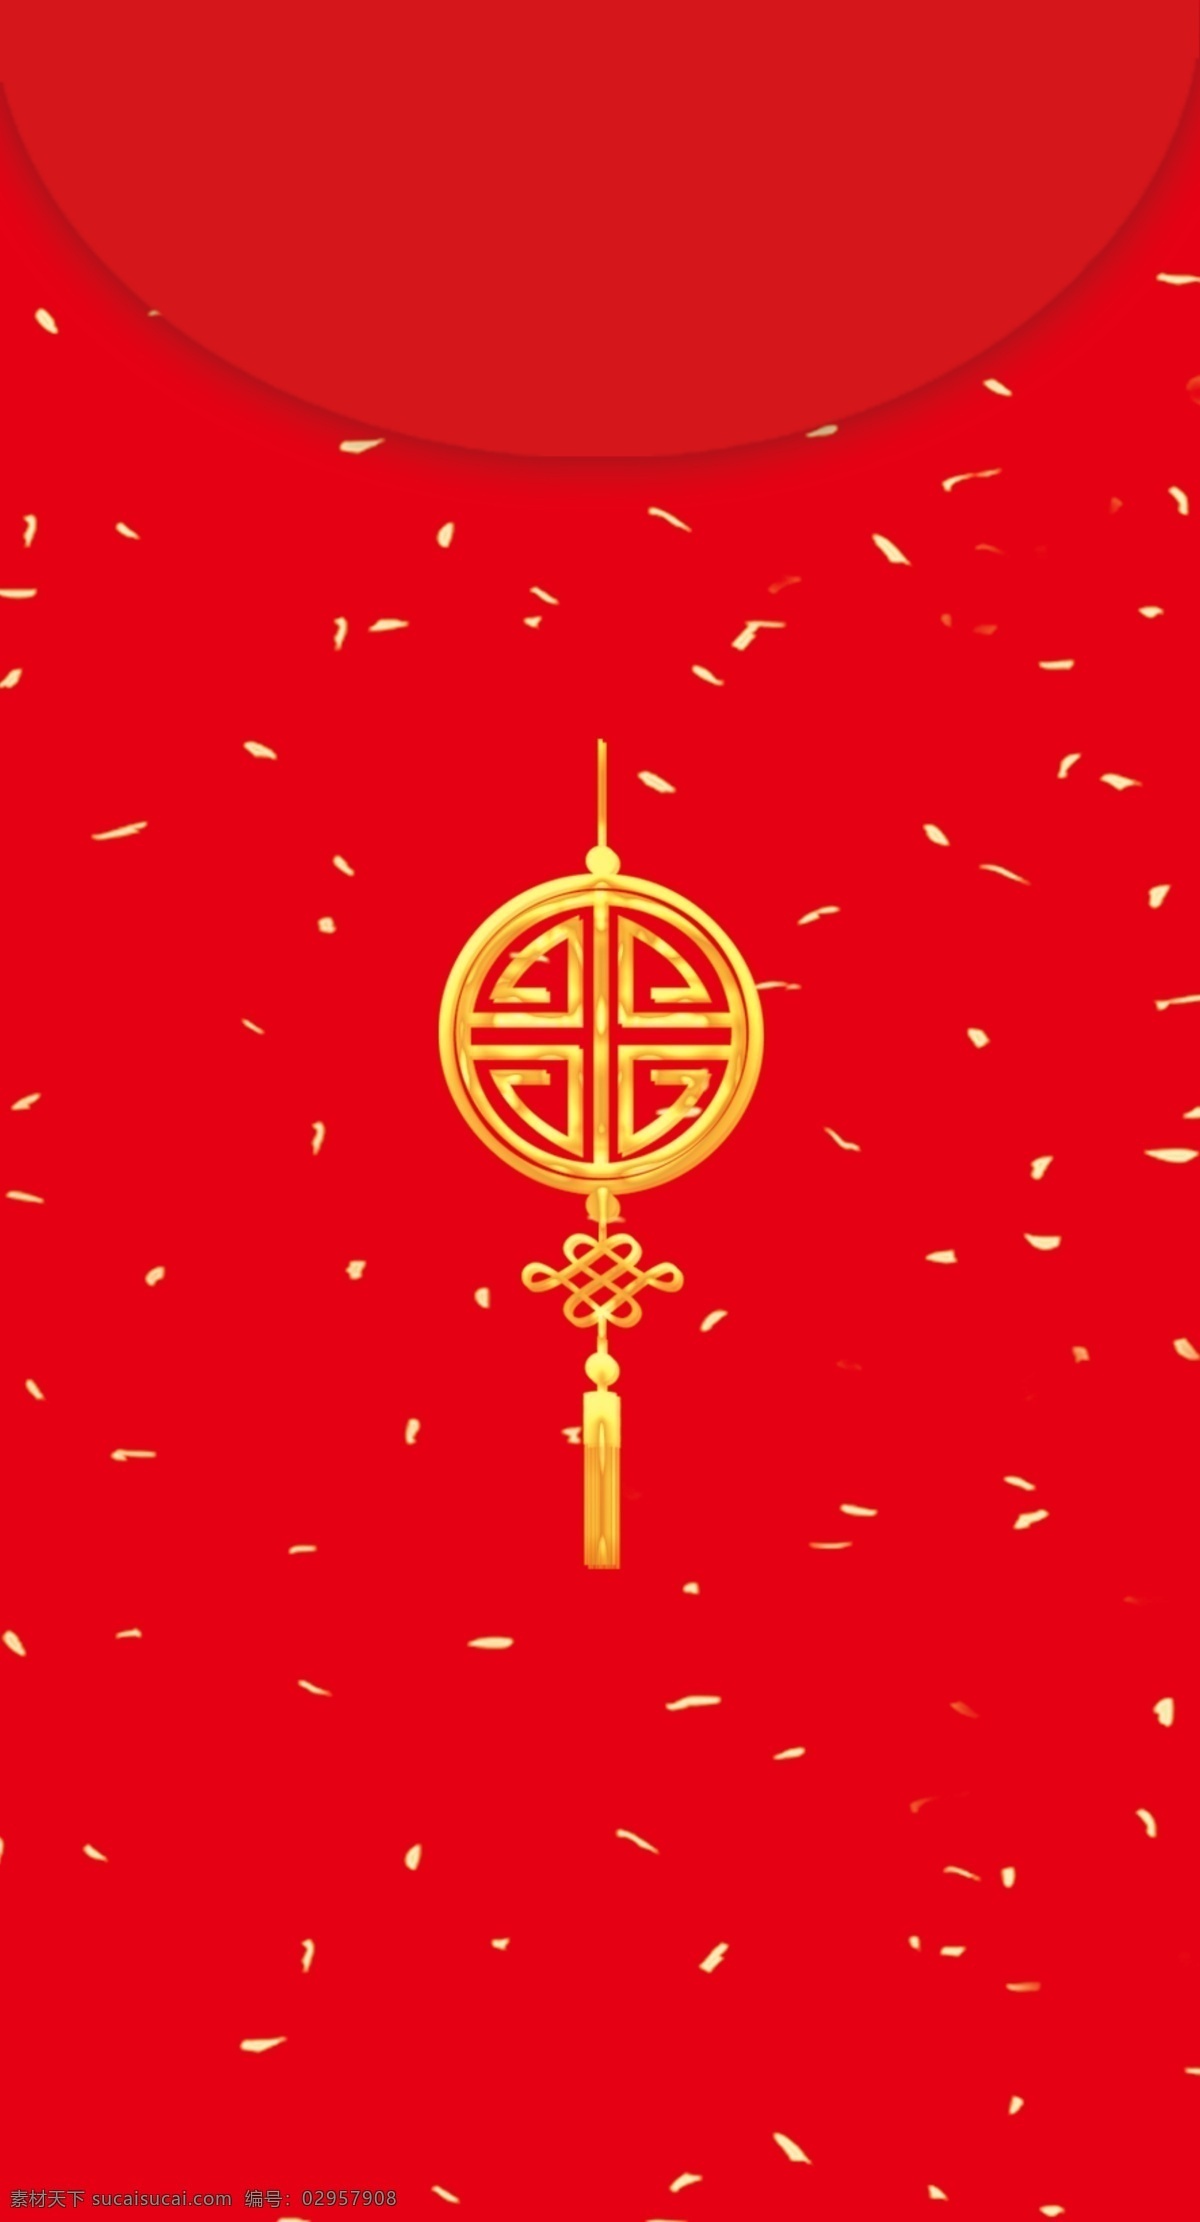 中国 红红 金 新年 红包 包装设计 吊坠 金色字体 创意包装设计 红金 2019 猪年吉祥 如意吉祥 星光点缀